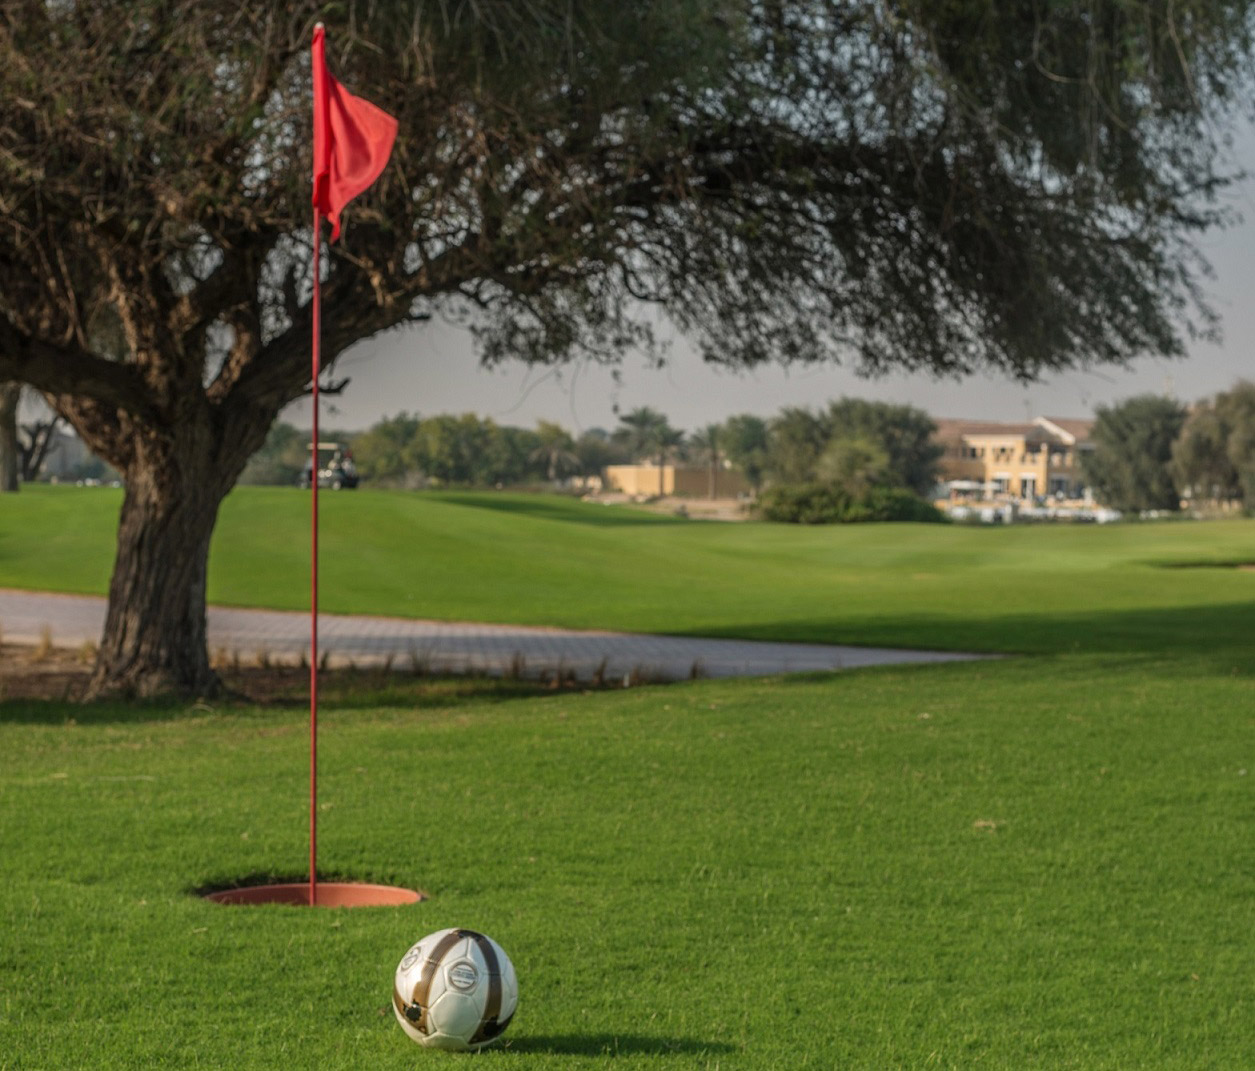 جولف القدم في نادي المرابع العربية للجولف